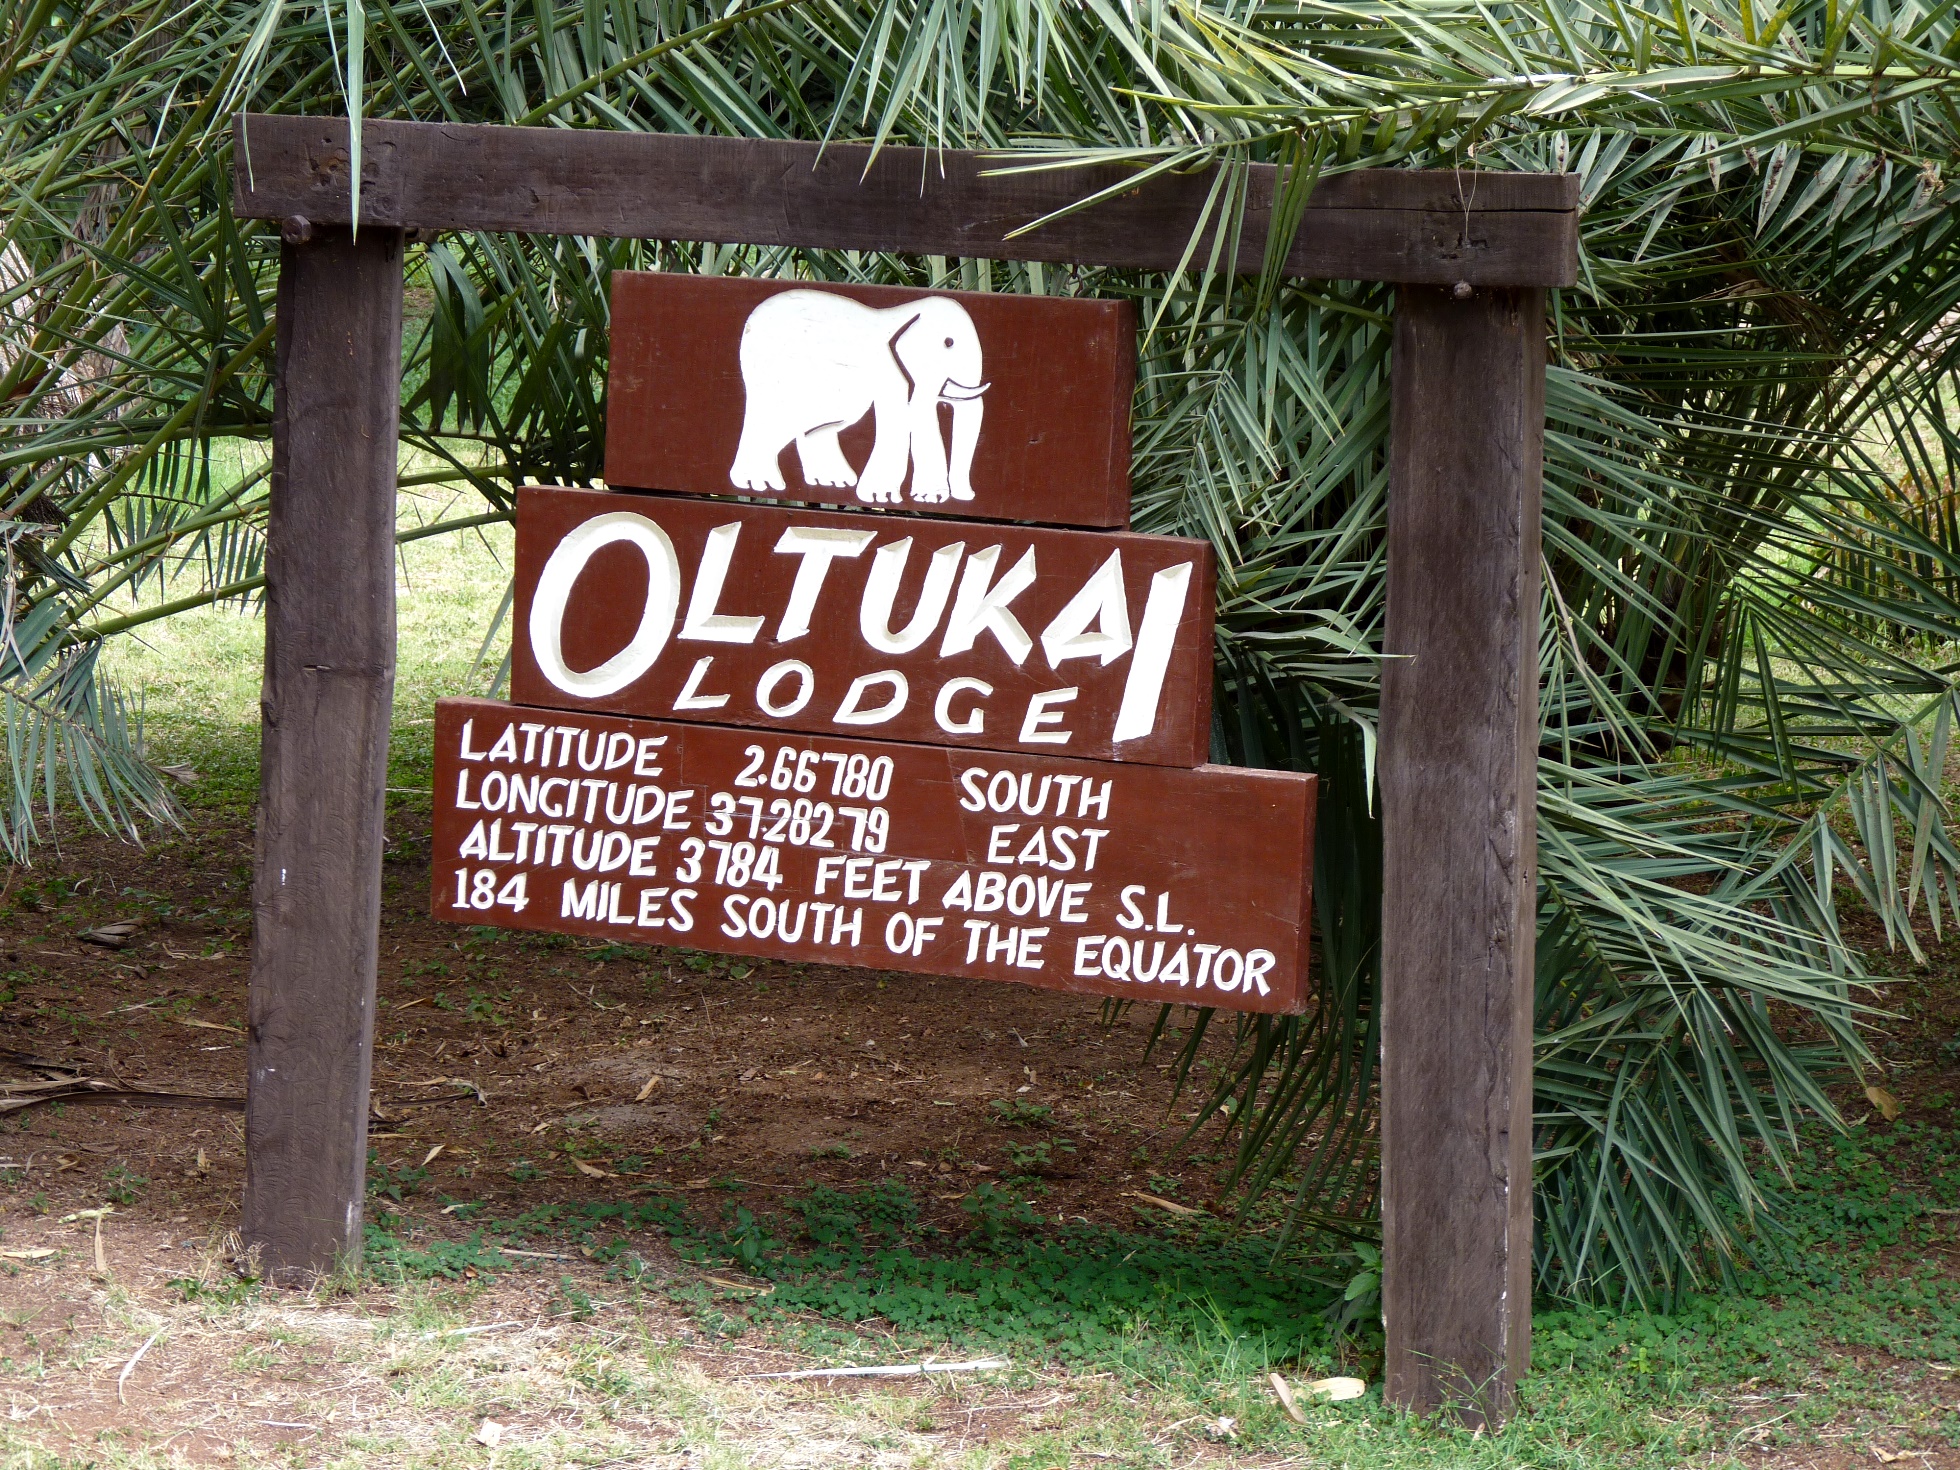 Begrüßungsschild am Eingang zur Ol Tukai Lodge